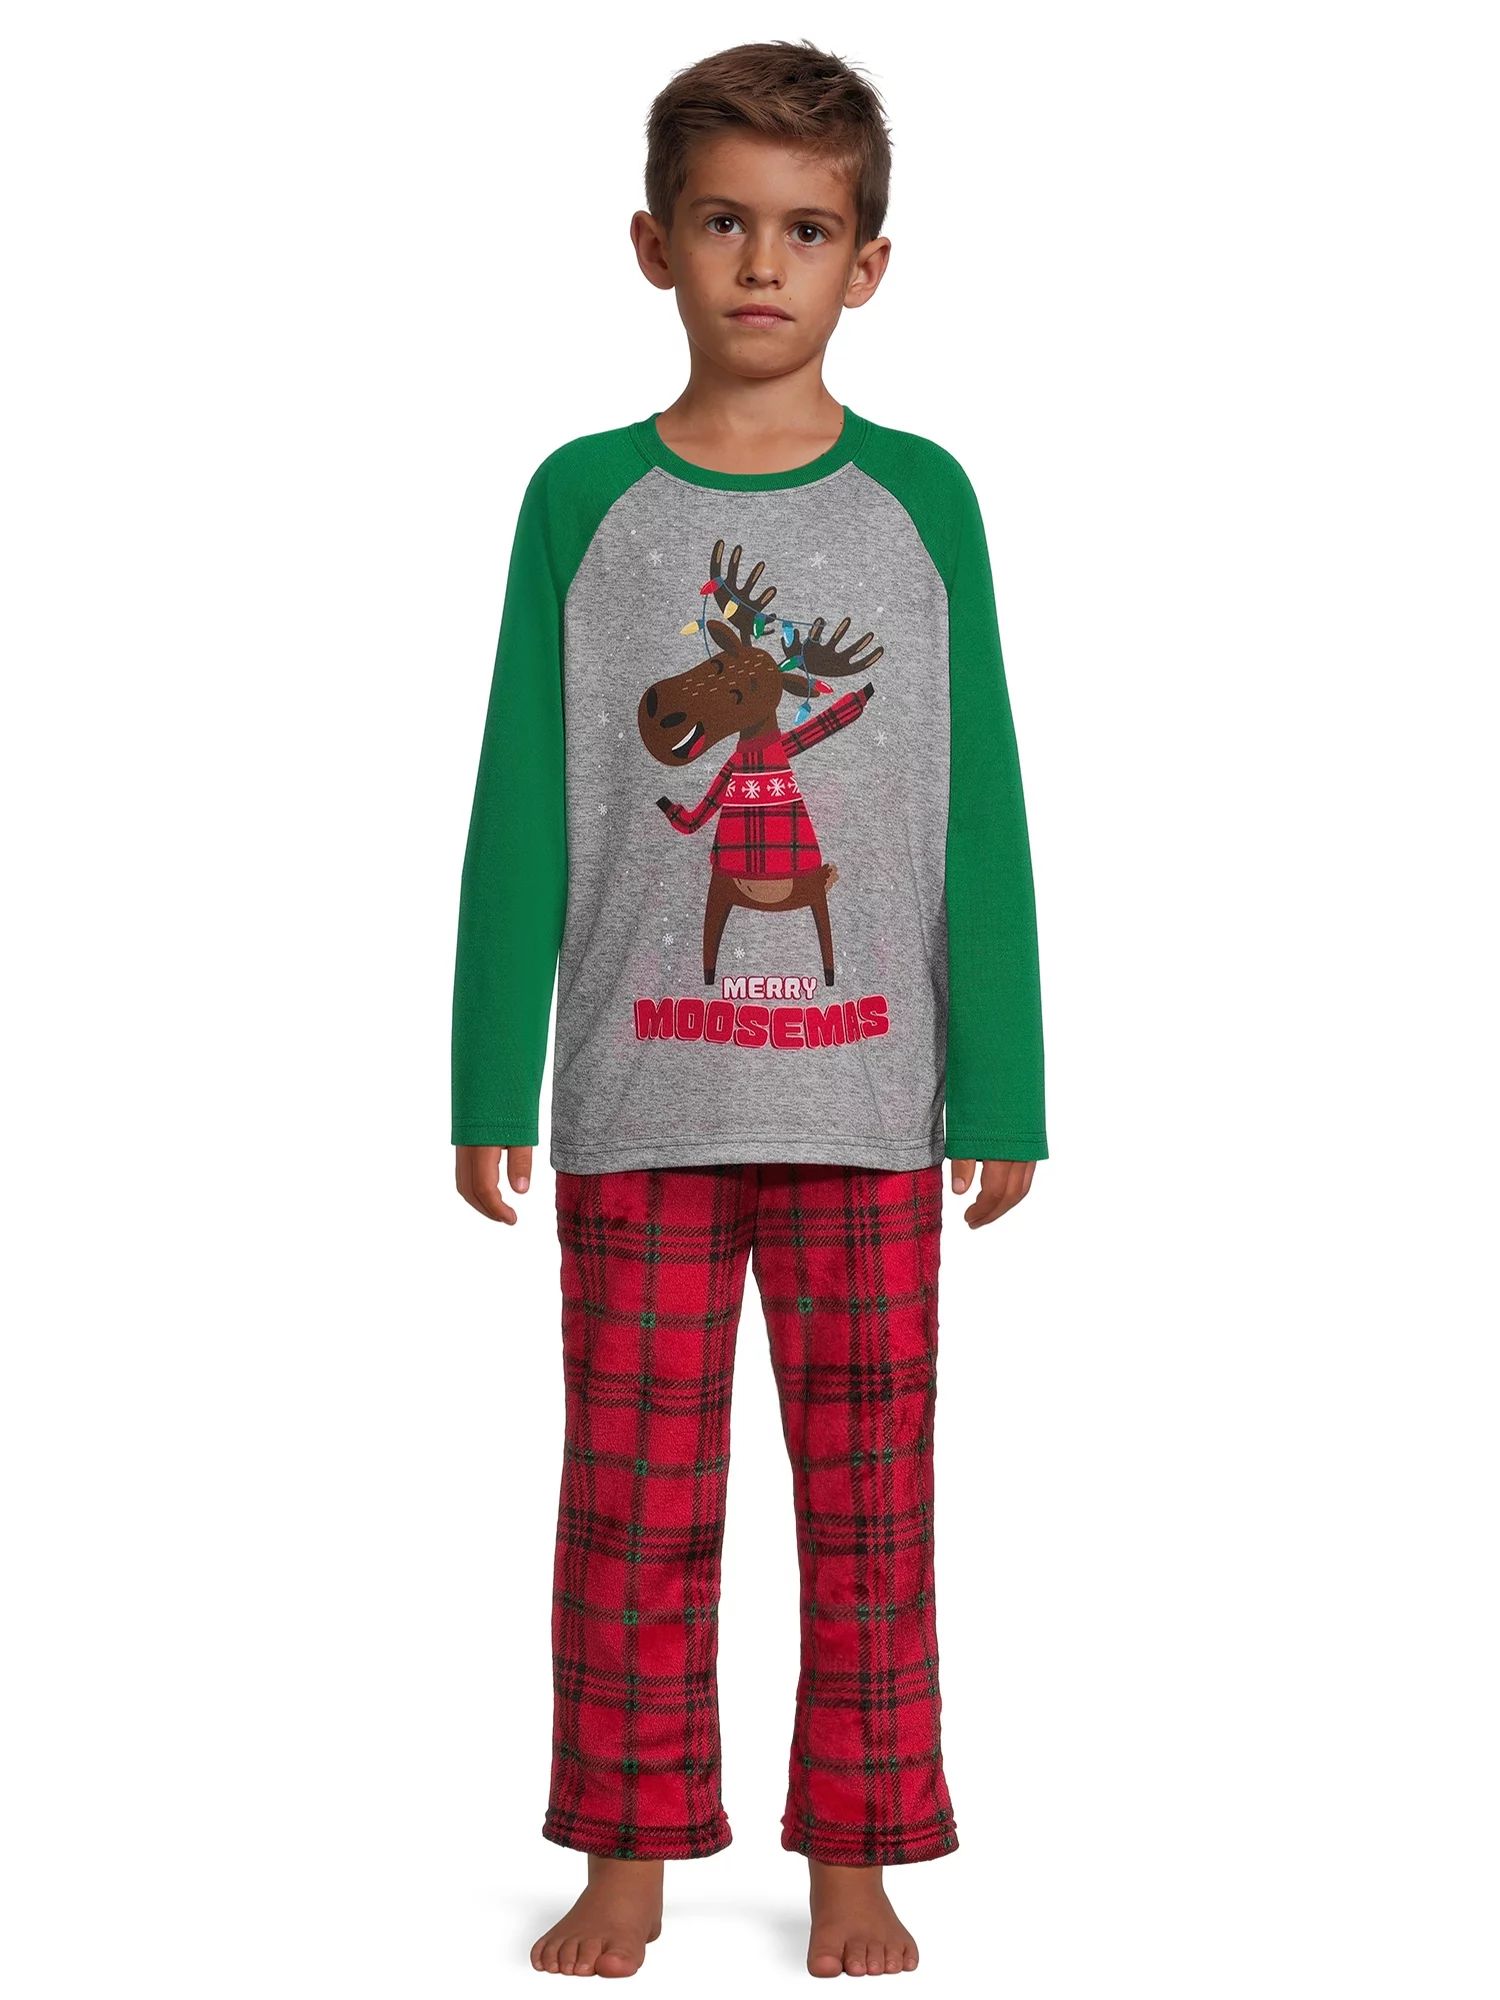 Holiday Time Boys Christmas Long Sleeve Top and Pajama Pant Set, 2-Piece, Sizes 4-16 Husky | Walmart (US)